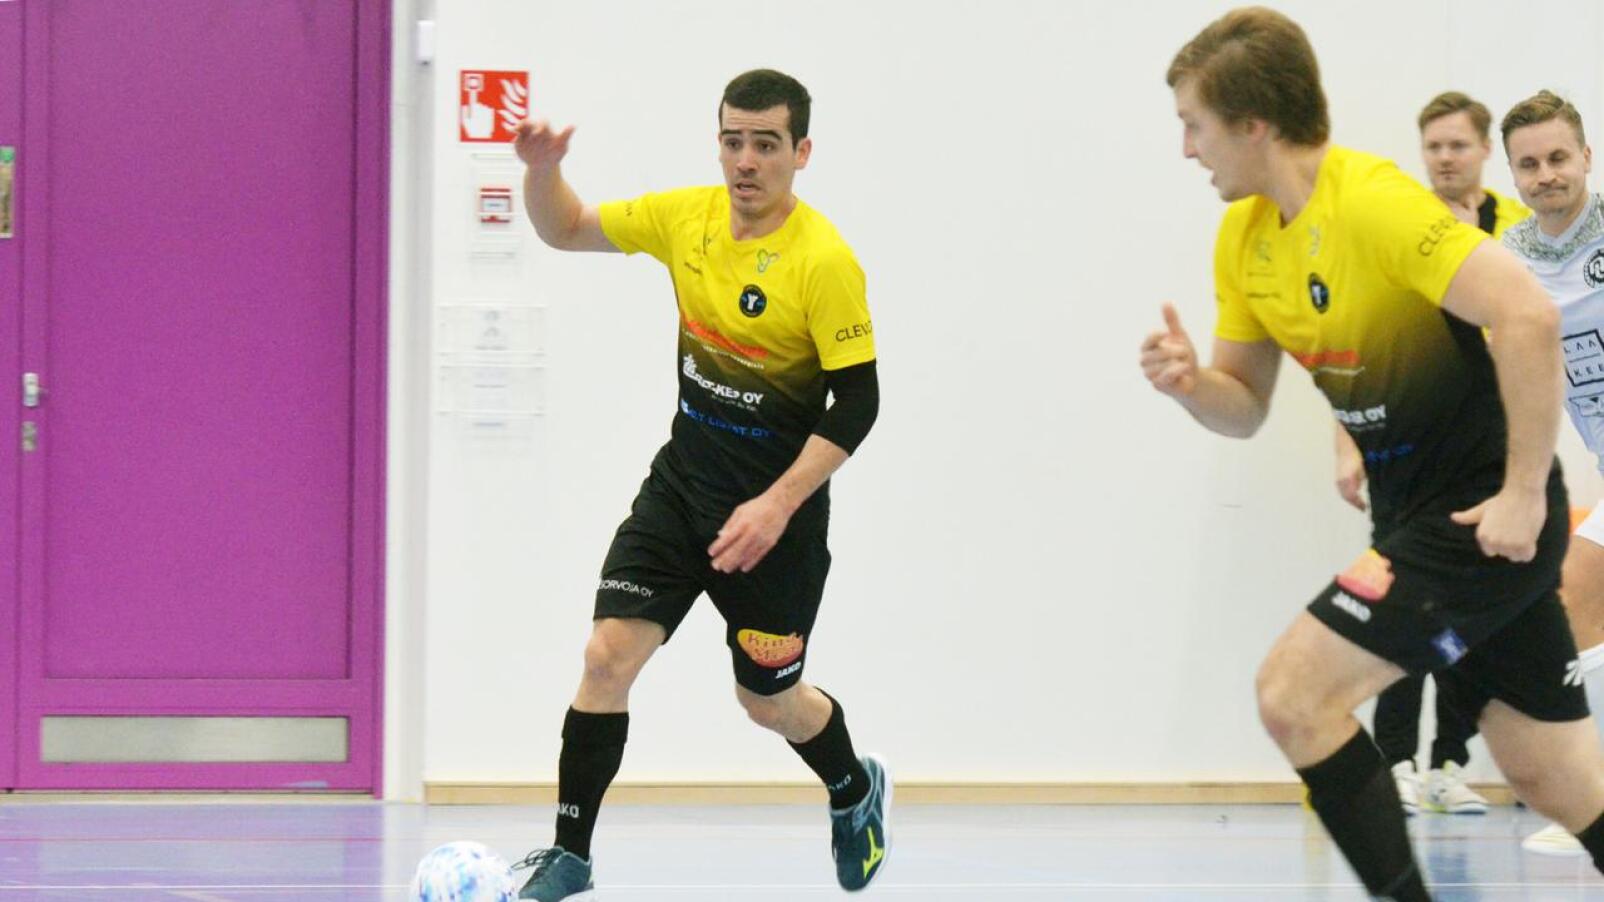 Tehopisteet 2+1 summannut Henry Gutierrez palkittiin Vieska Futsalin parhaana.